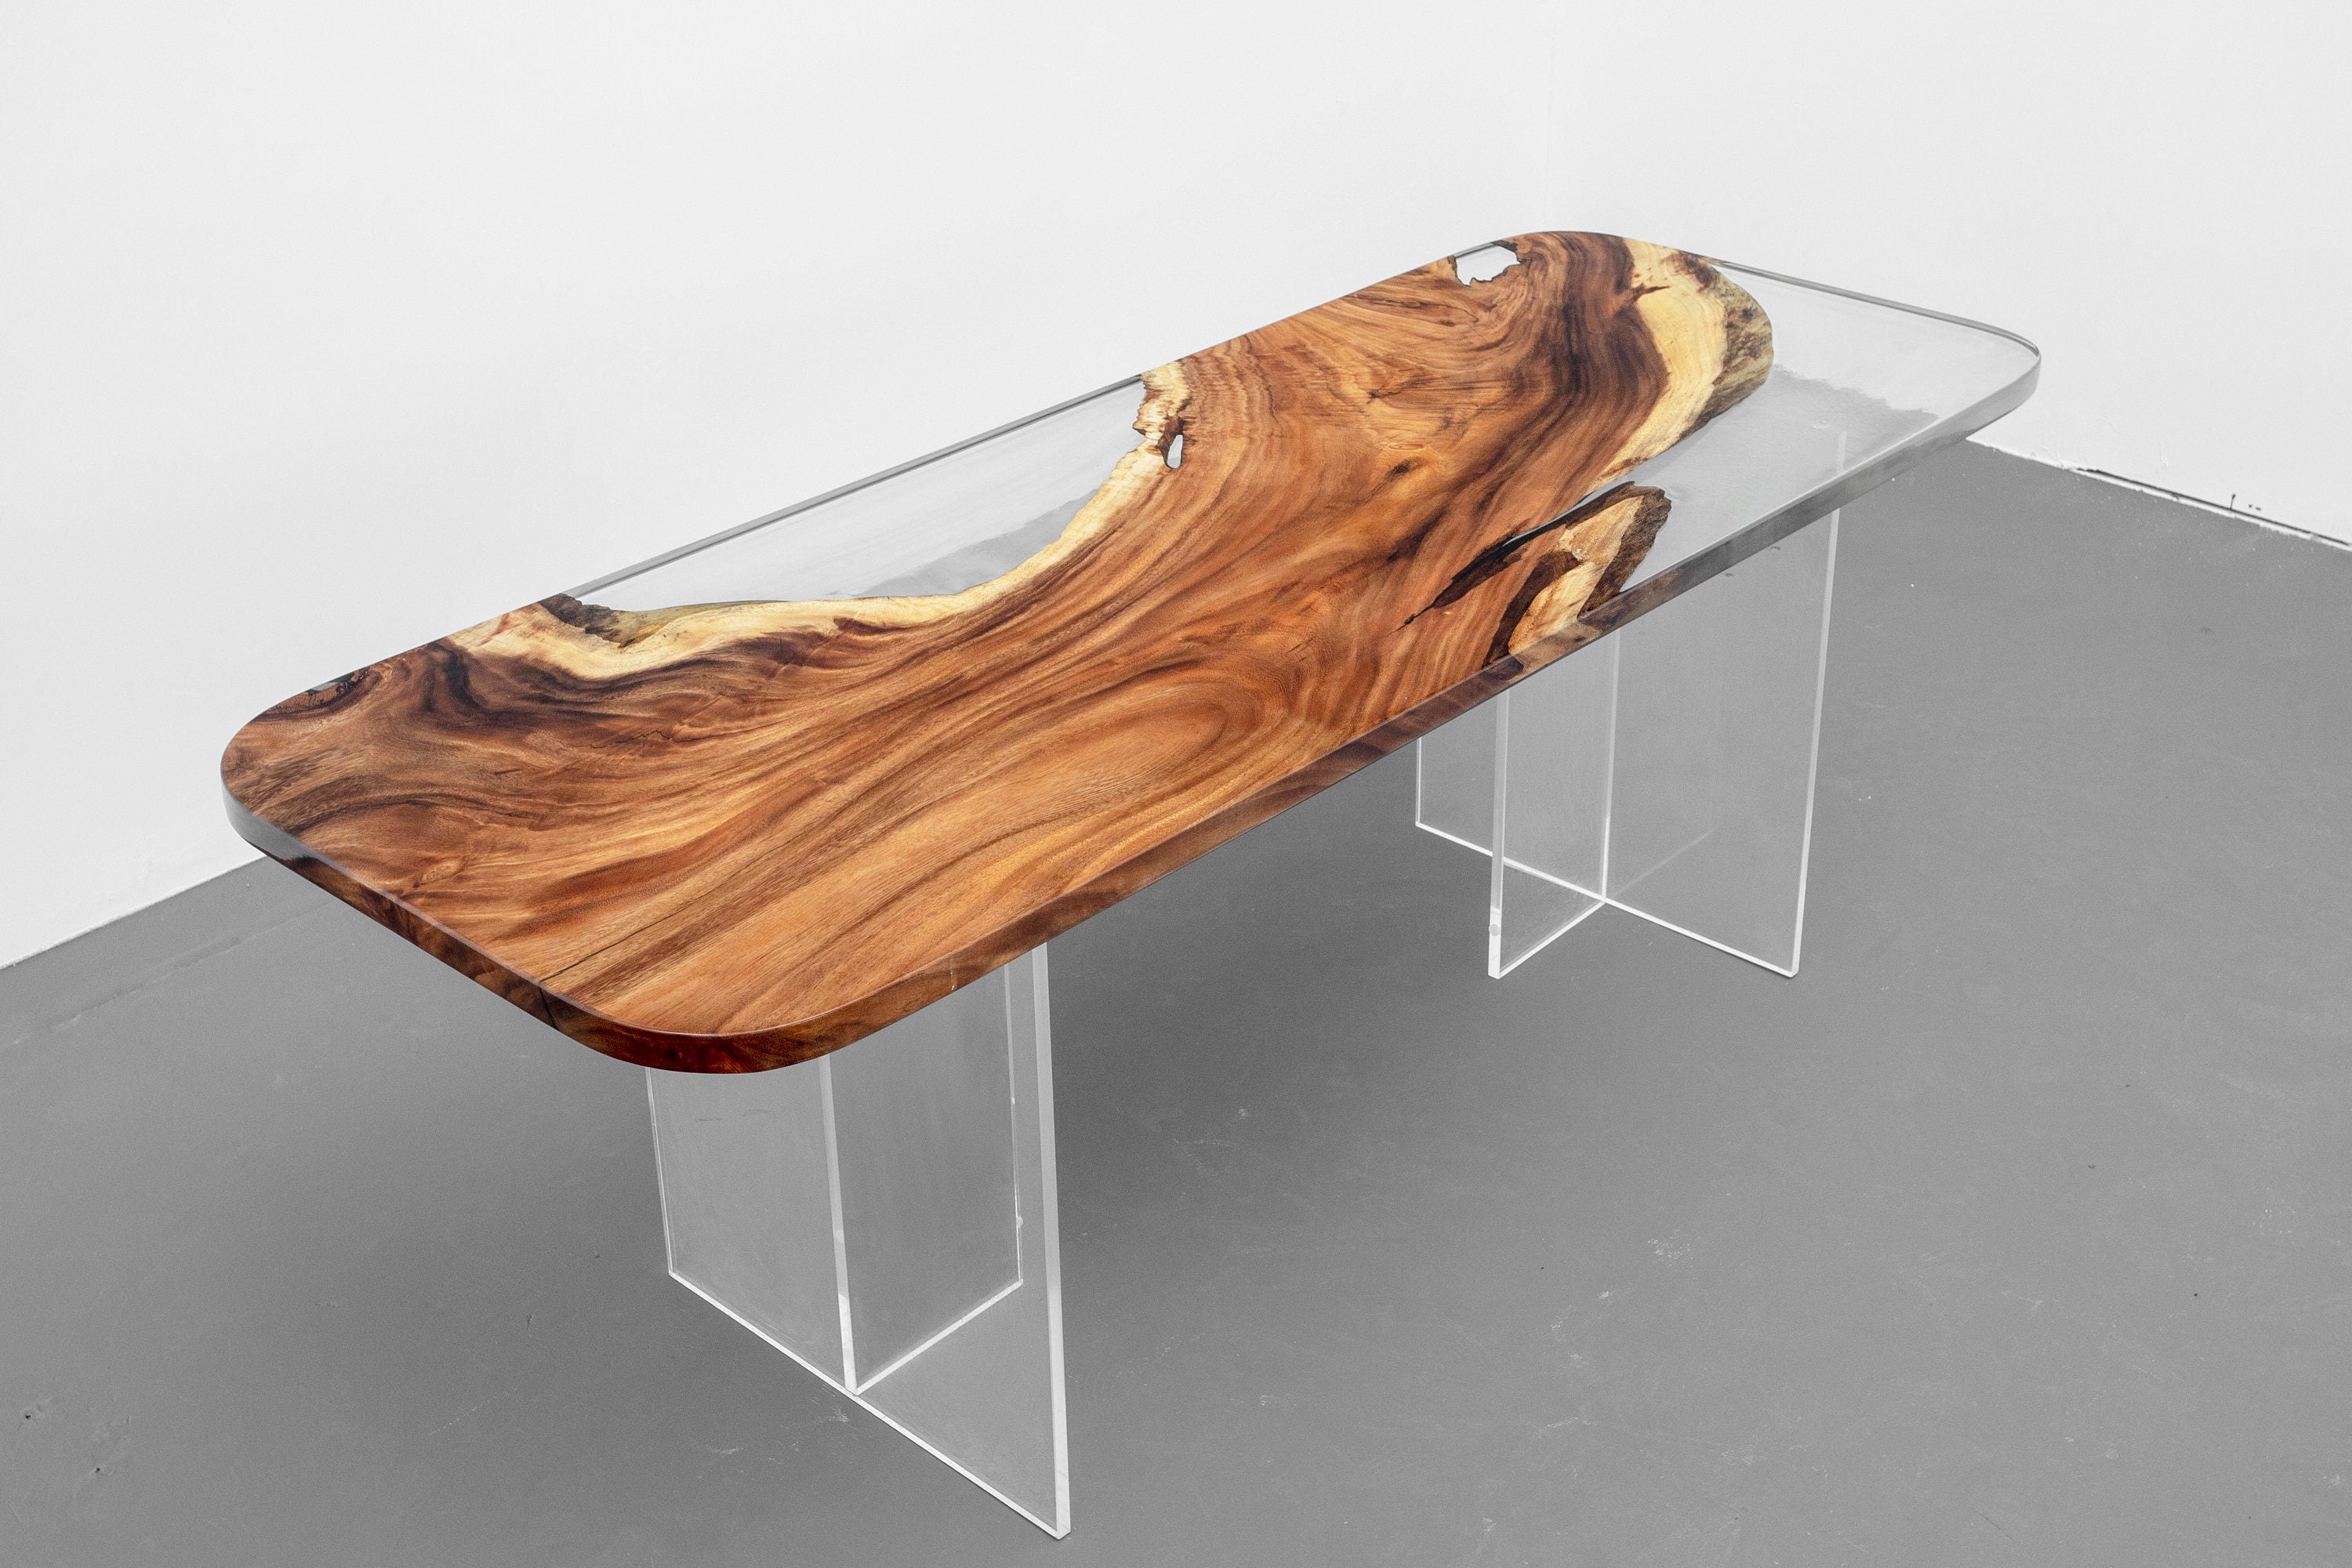 Speciell träform för att välja, handgjort bord, matbord i valnötsepoxi med levande kant